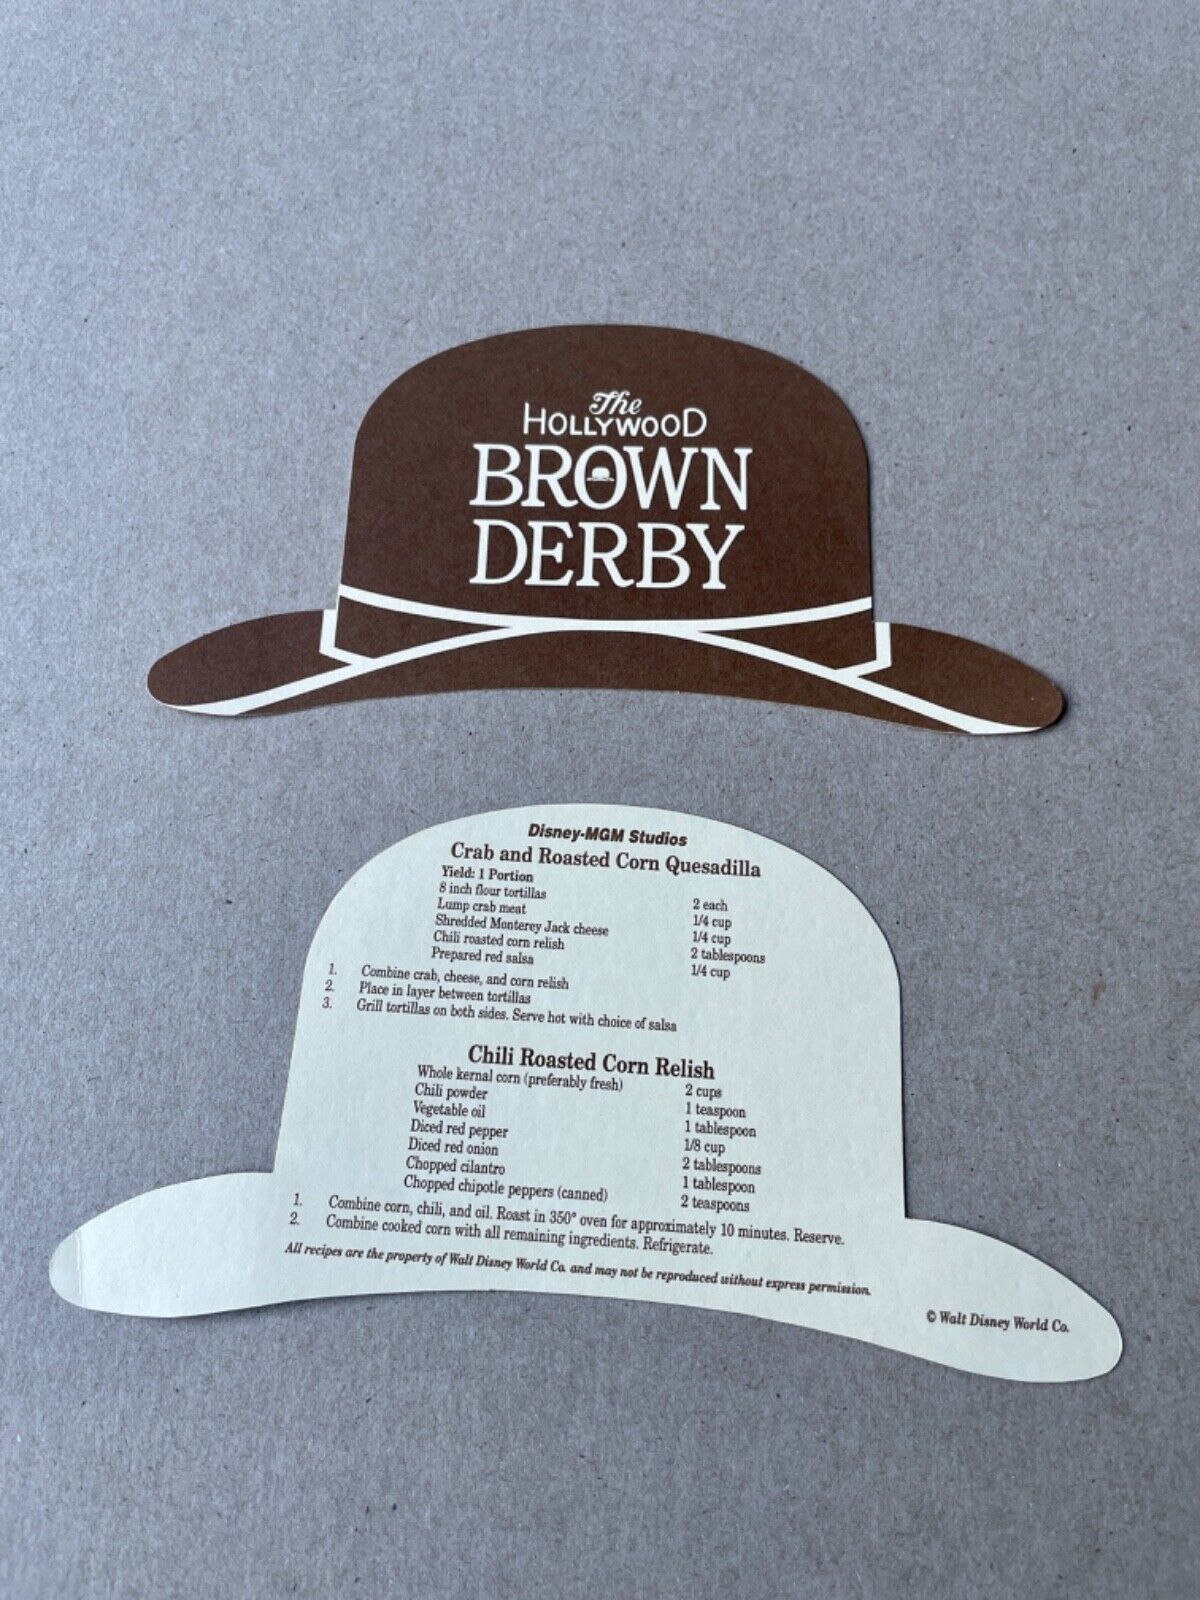 DISNEY MGM STUDIOS Hollywood Brown Derby Restaurant recipe card Disney World